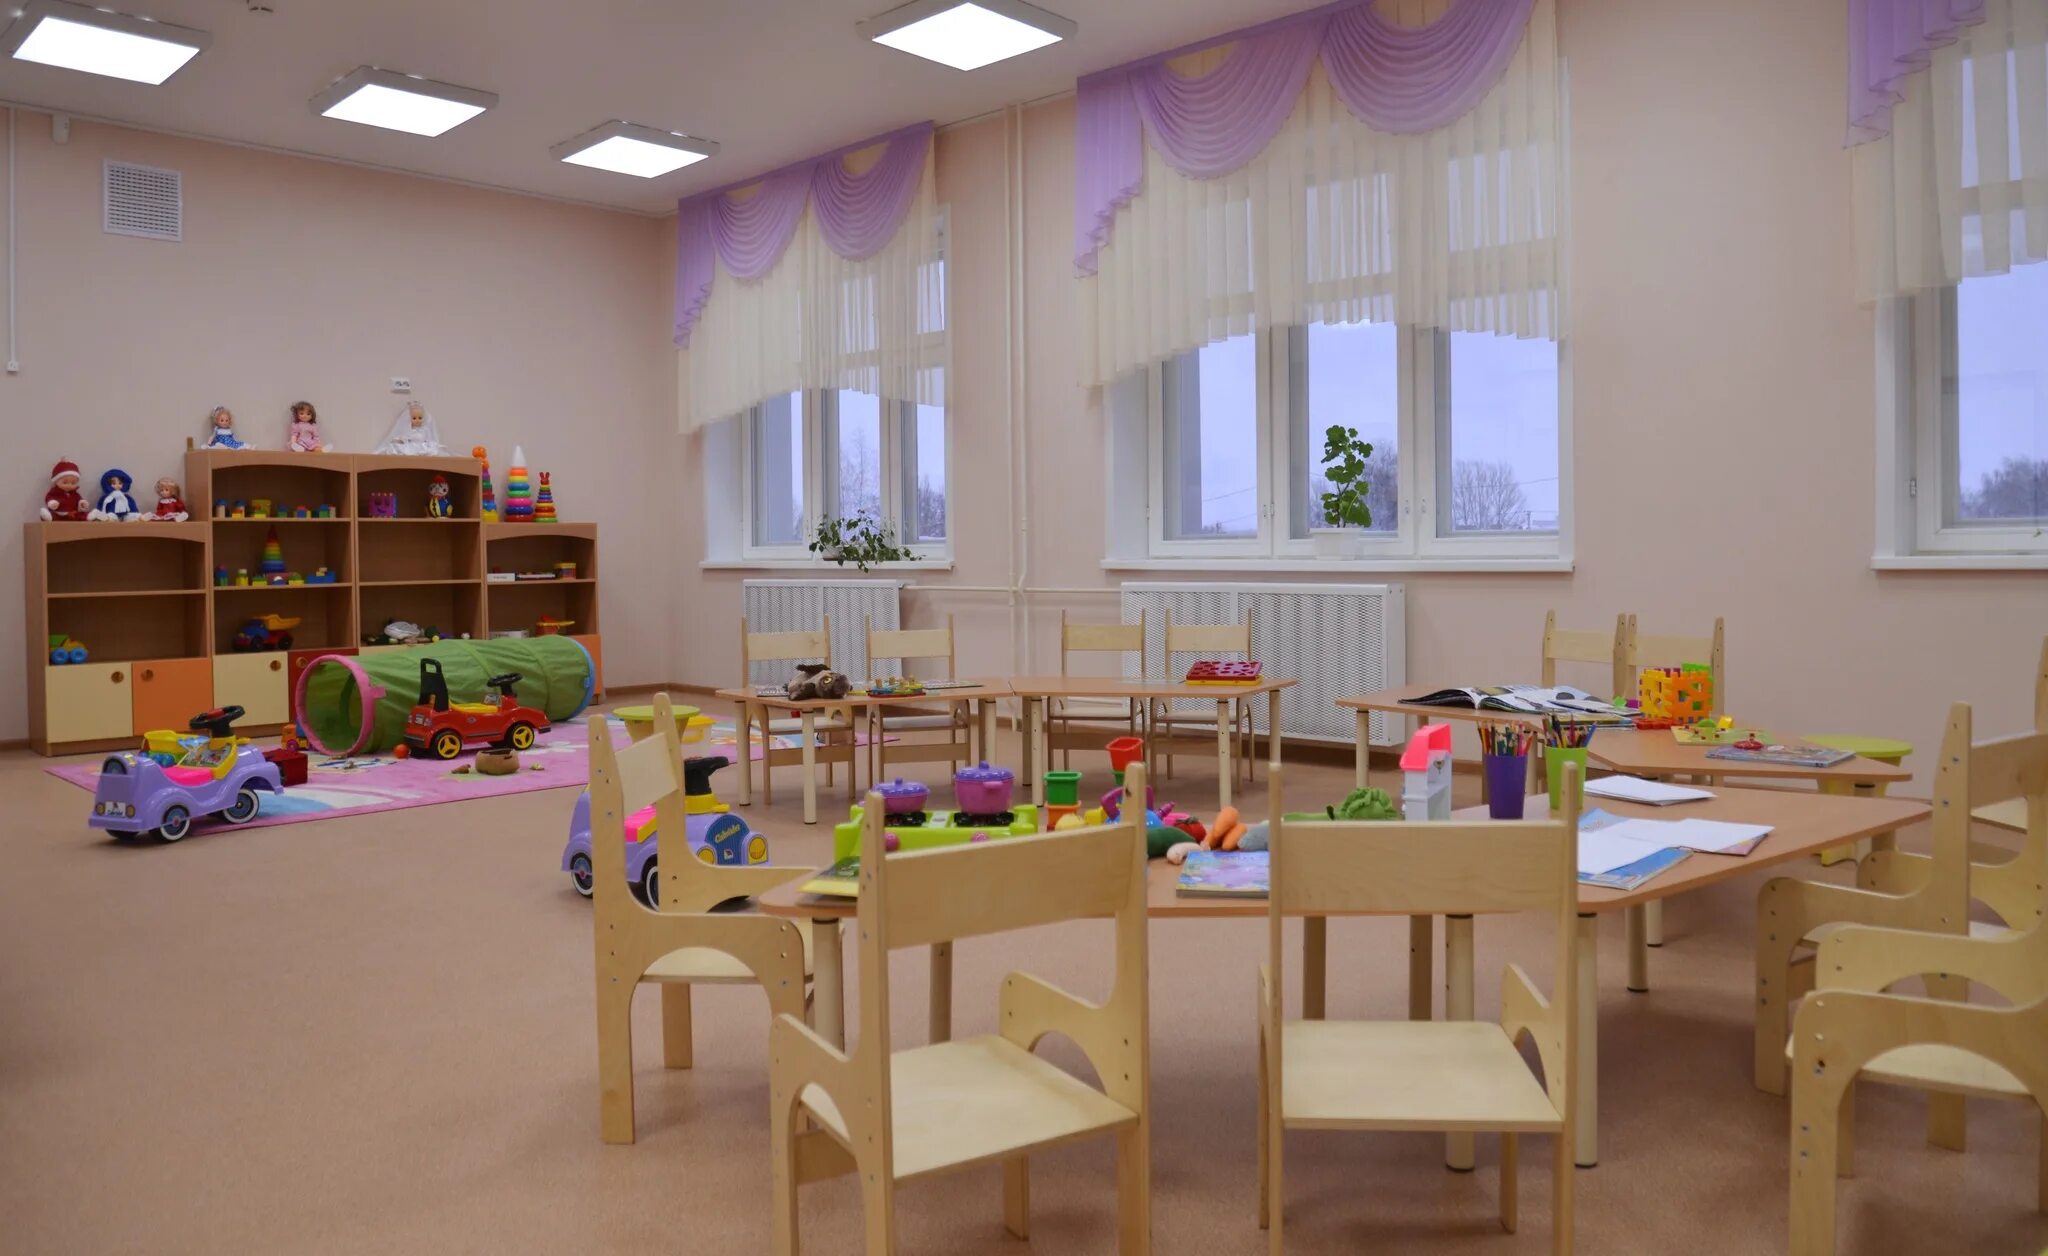 2 часть садика. Место в детском саду. Новый детский сад. Детские сады в России. Гос садик.